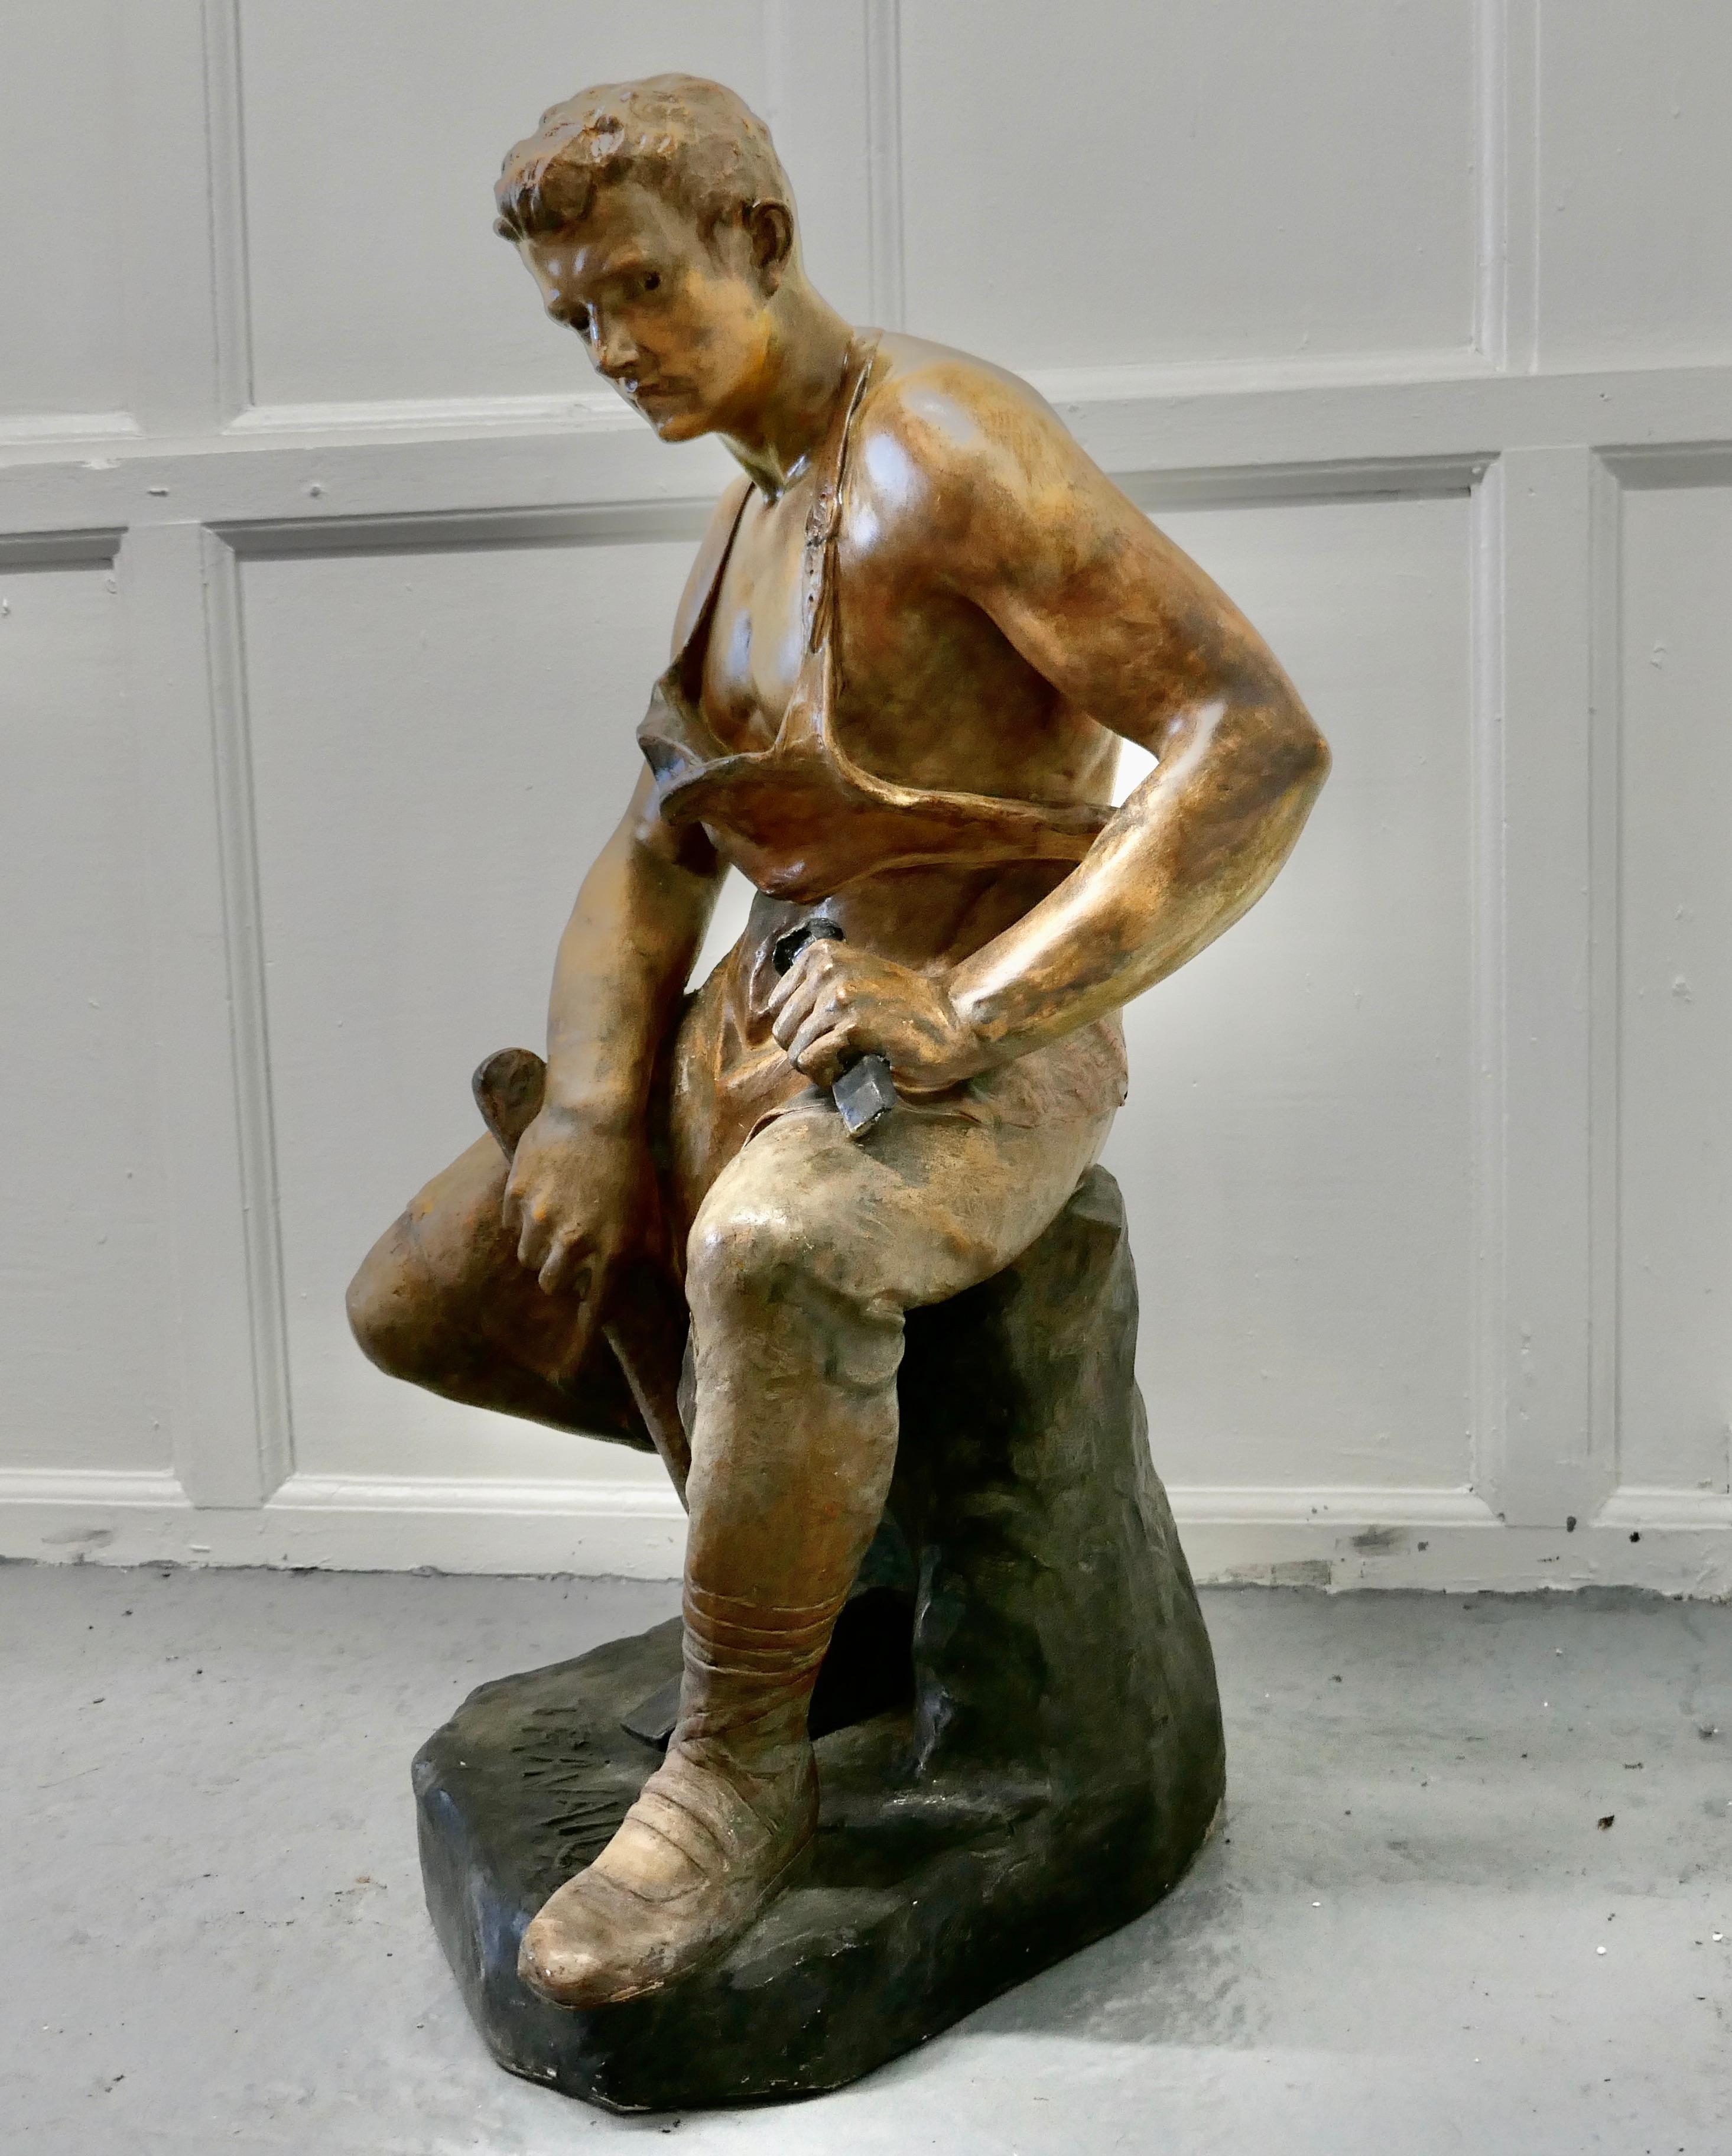 Große Gipsfigur des sitzenden Schmieds aus den 1920er Jahren, Le Travail

Ein charmantes Stück Volkskunst, eine bemalte Statue des berühmten Schmieds, bekannt als 